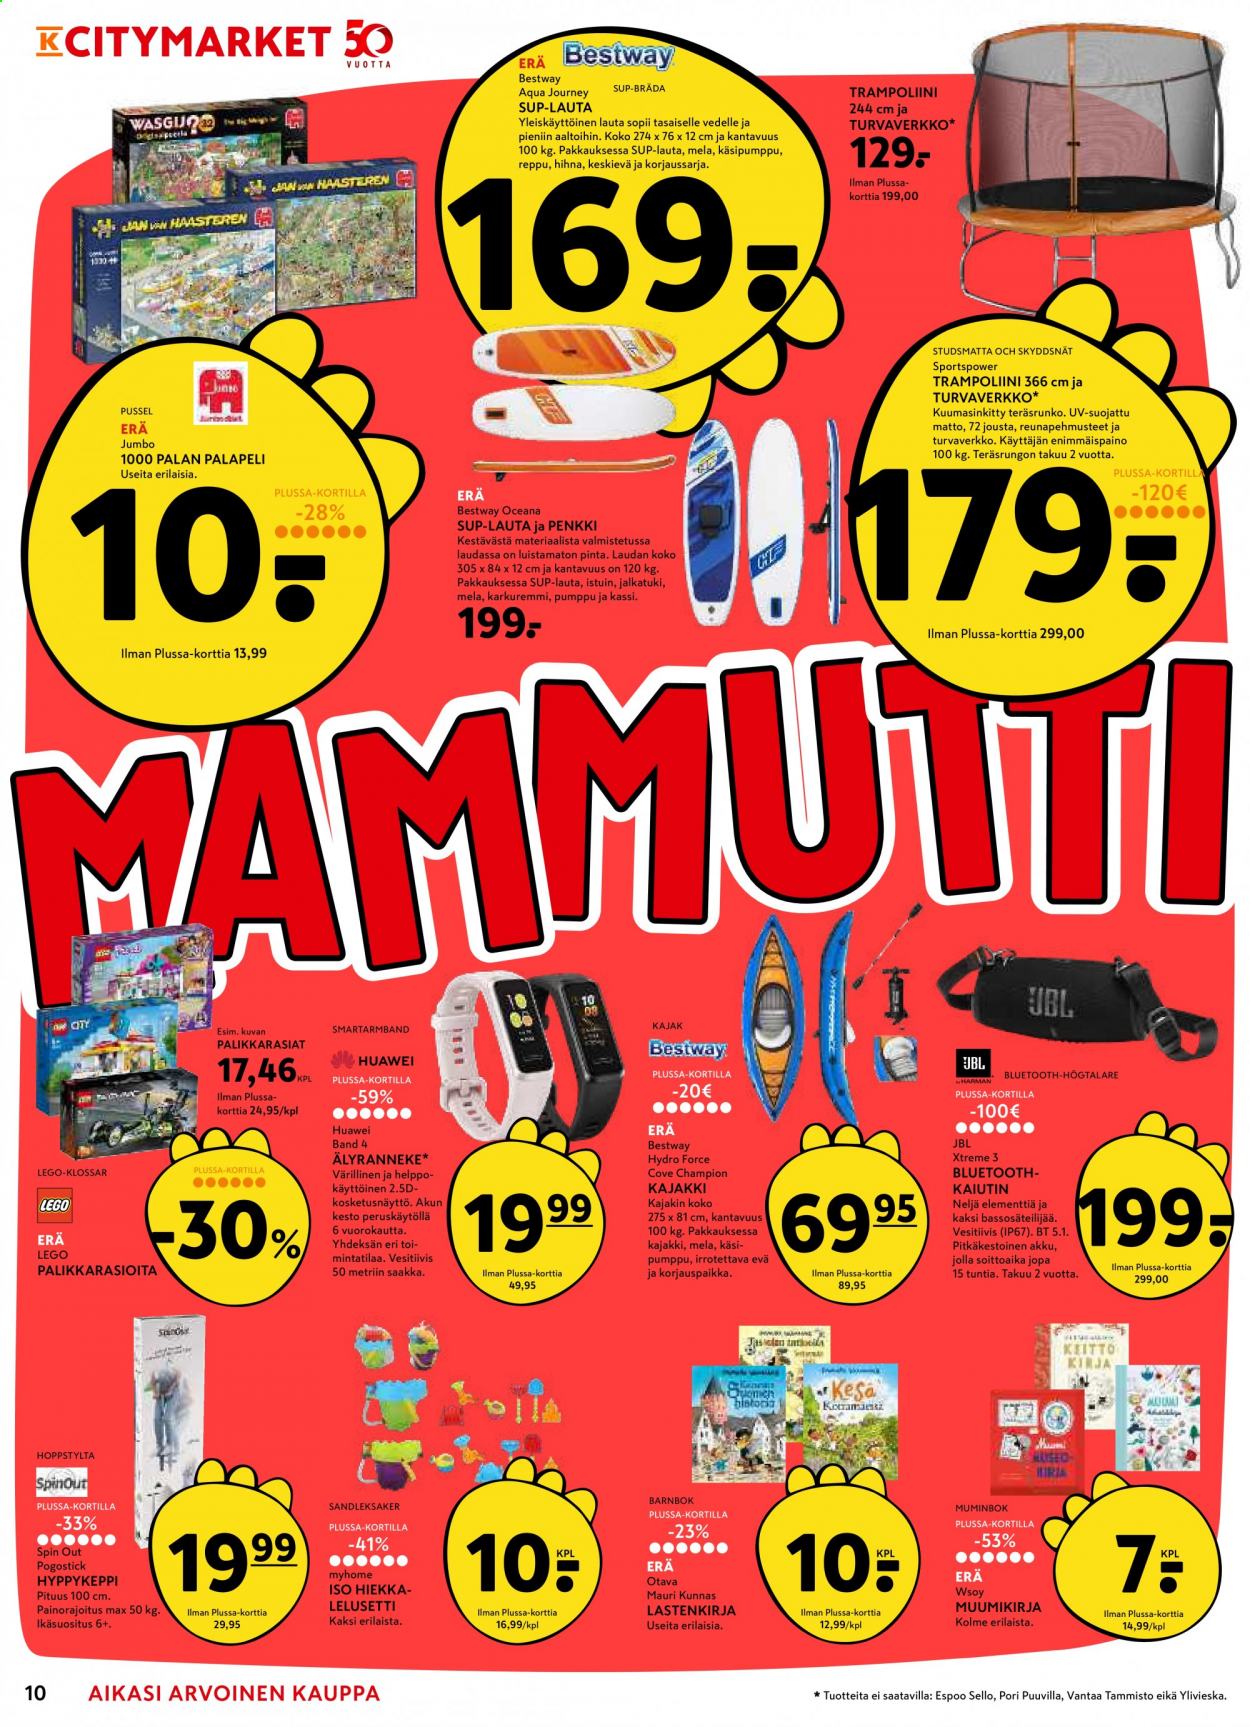 thumbnail - K-citymarket tarjoukset  - 20.05.2021 - 30.05.2021 - Tarjoustuotteet - matto, Huawei, JBL, Bestway, kajakki, LEGO, trampoliini. Sivu 10.